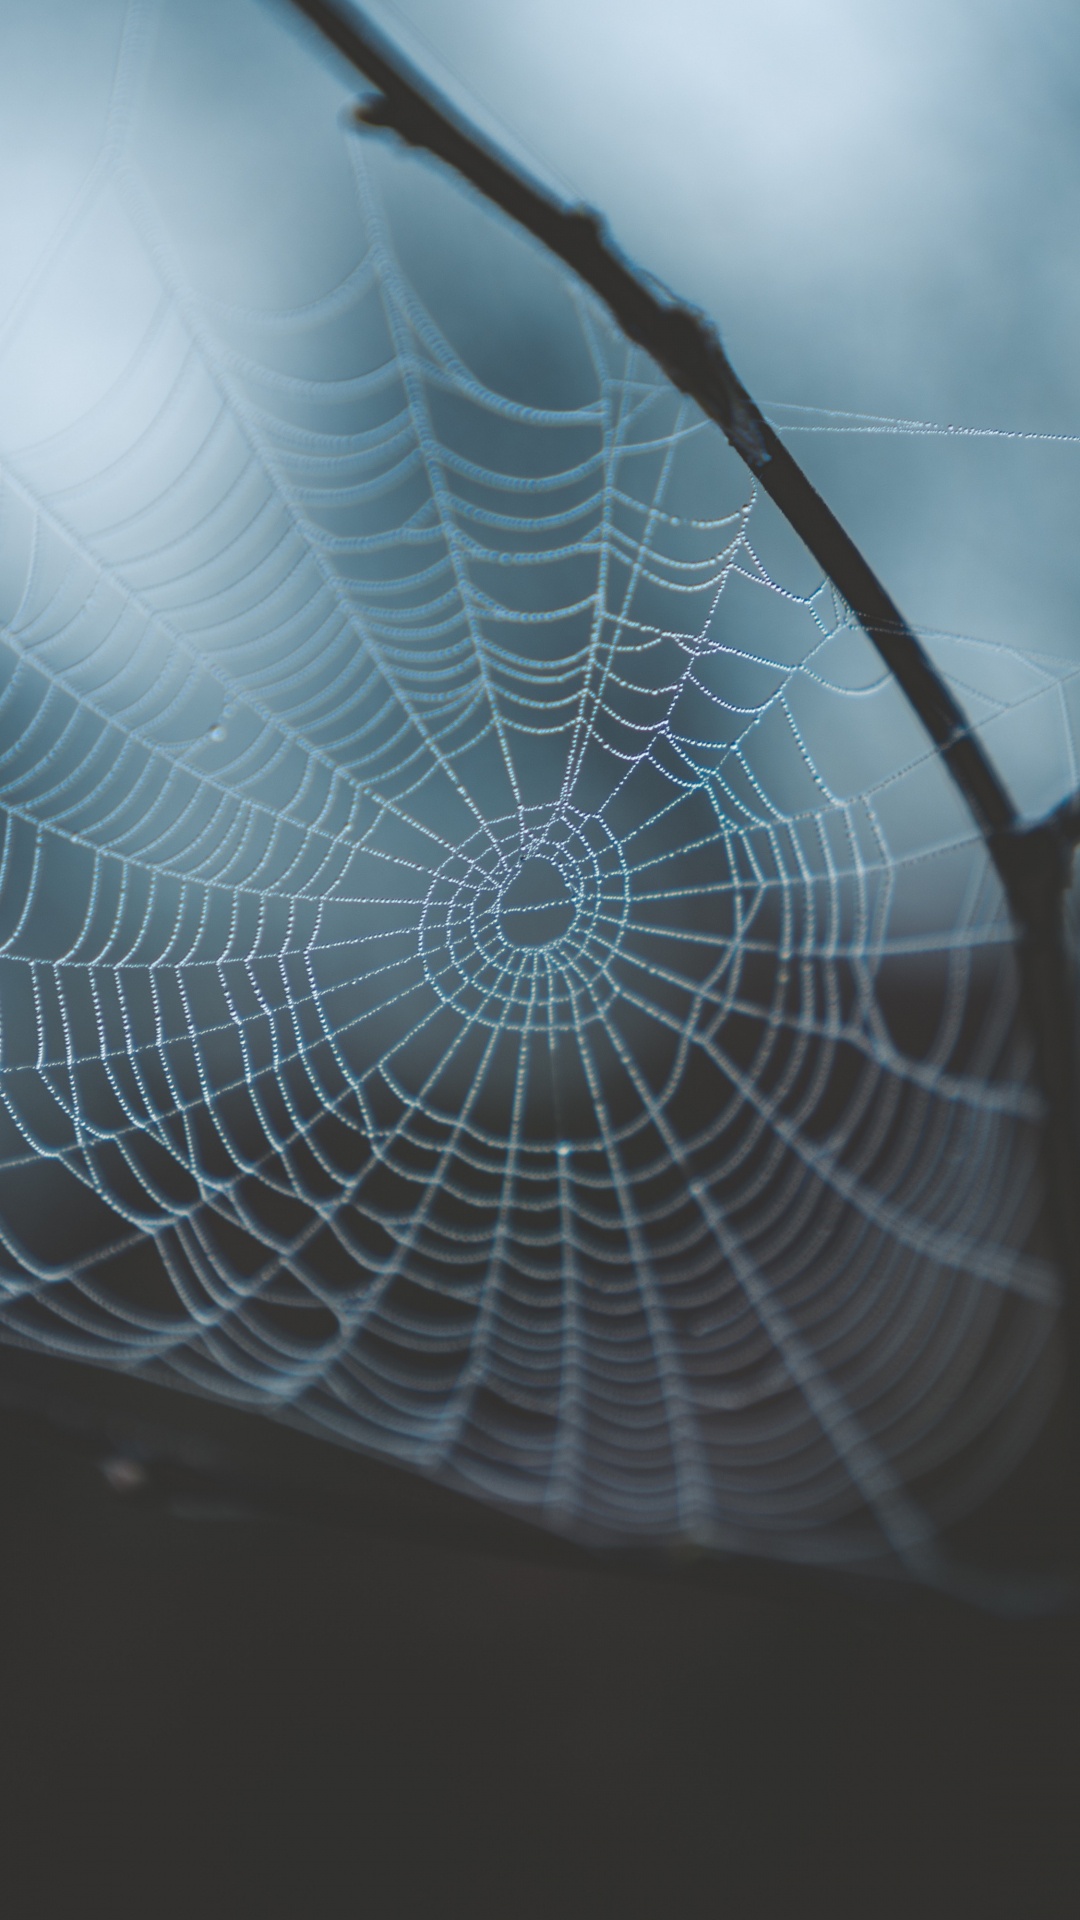 蜘蛛网, 早上, 光, 透明材料, 天空 壁纸 1080x1920 允许